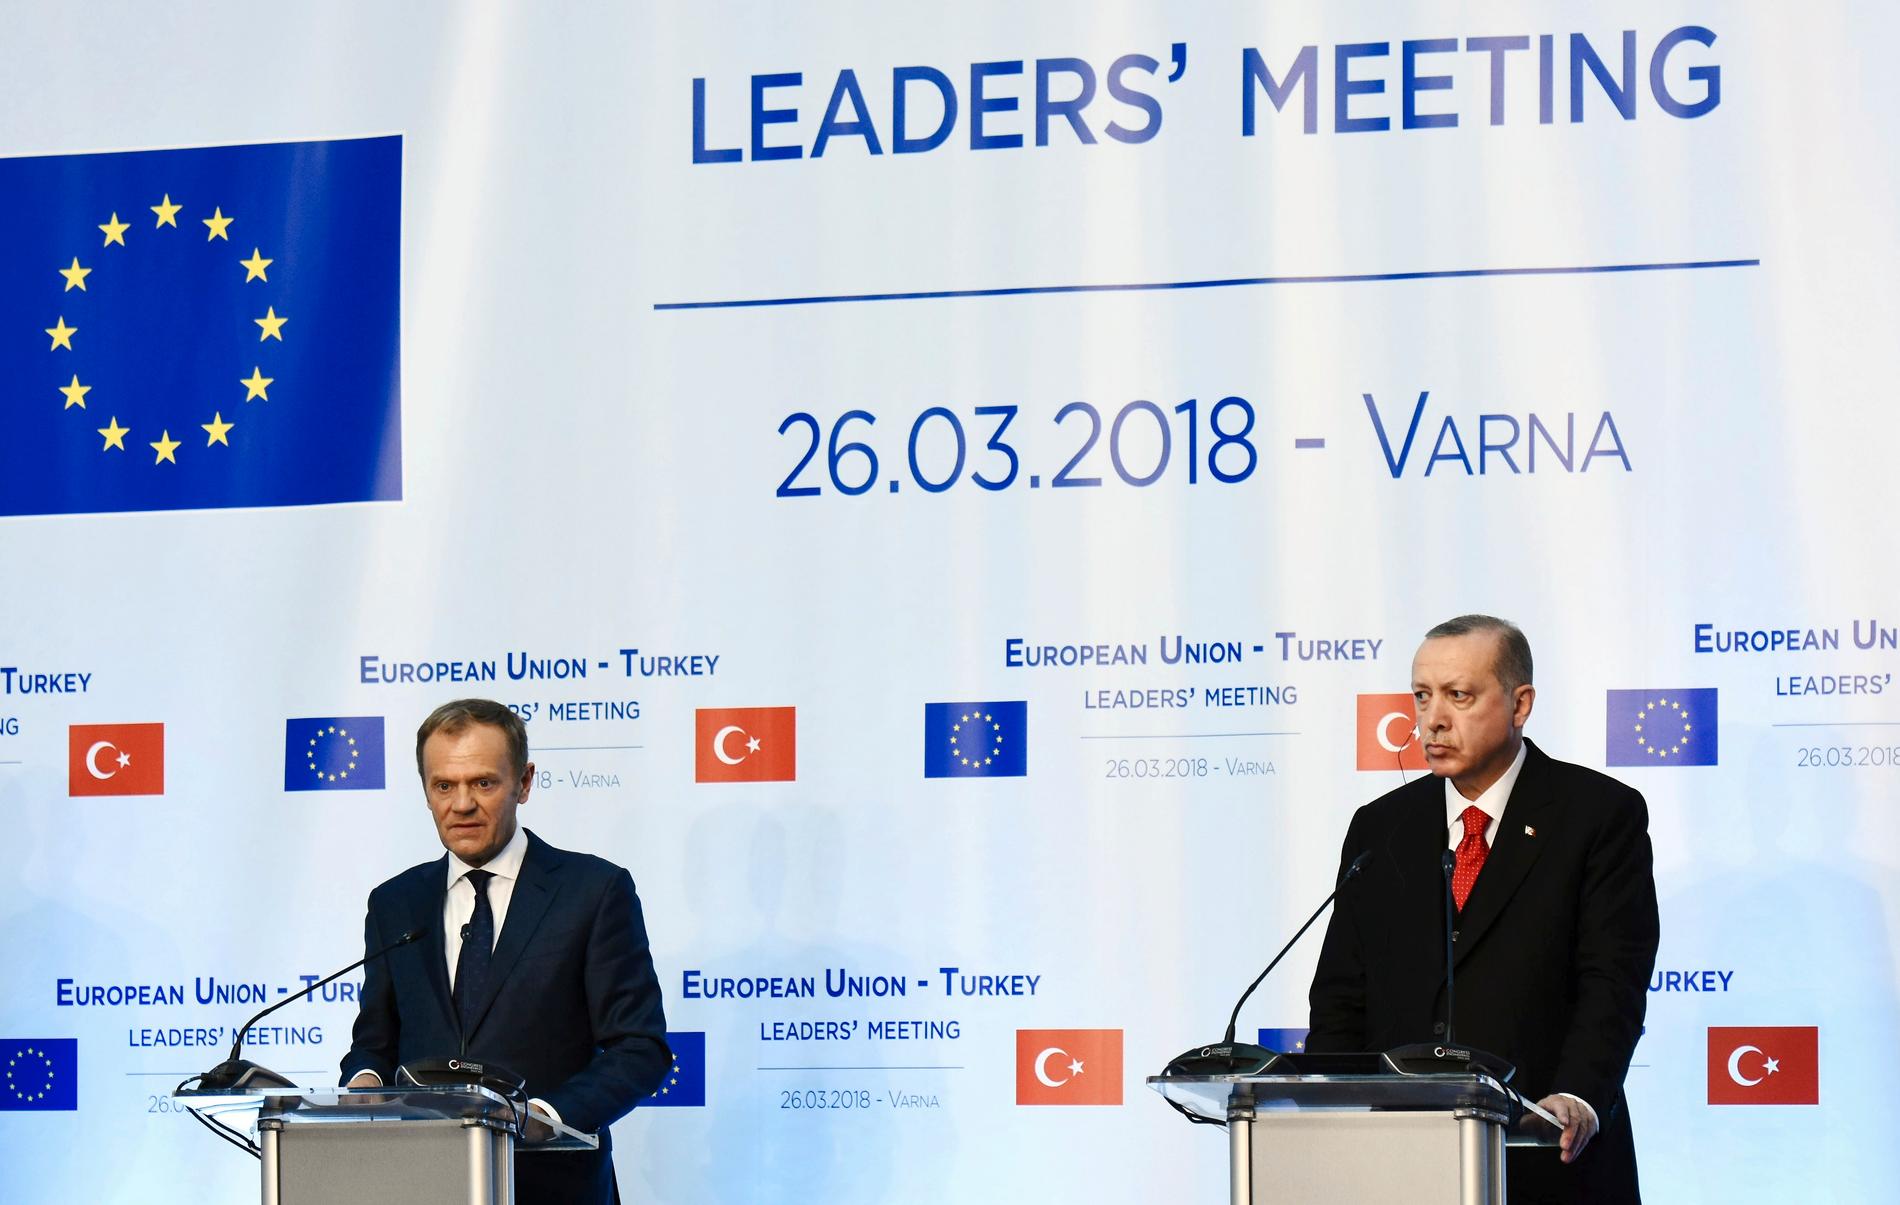 EU:s permanente rådsordförande Donald Tusk och Turkiets president Recep Tayyip Erdogan under ett möte förra året. Arkivbild.